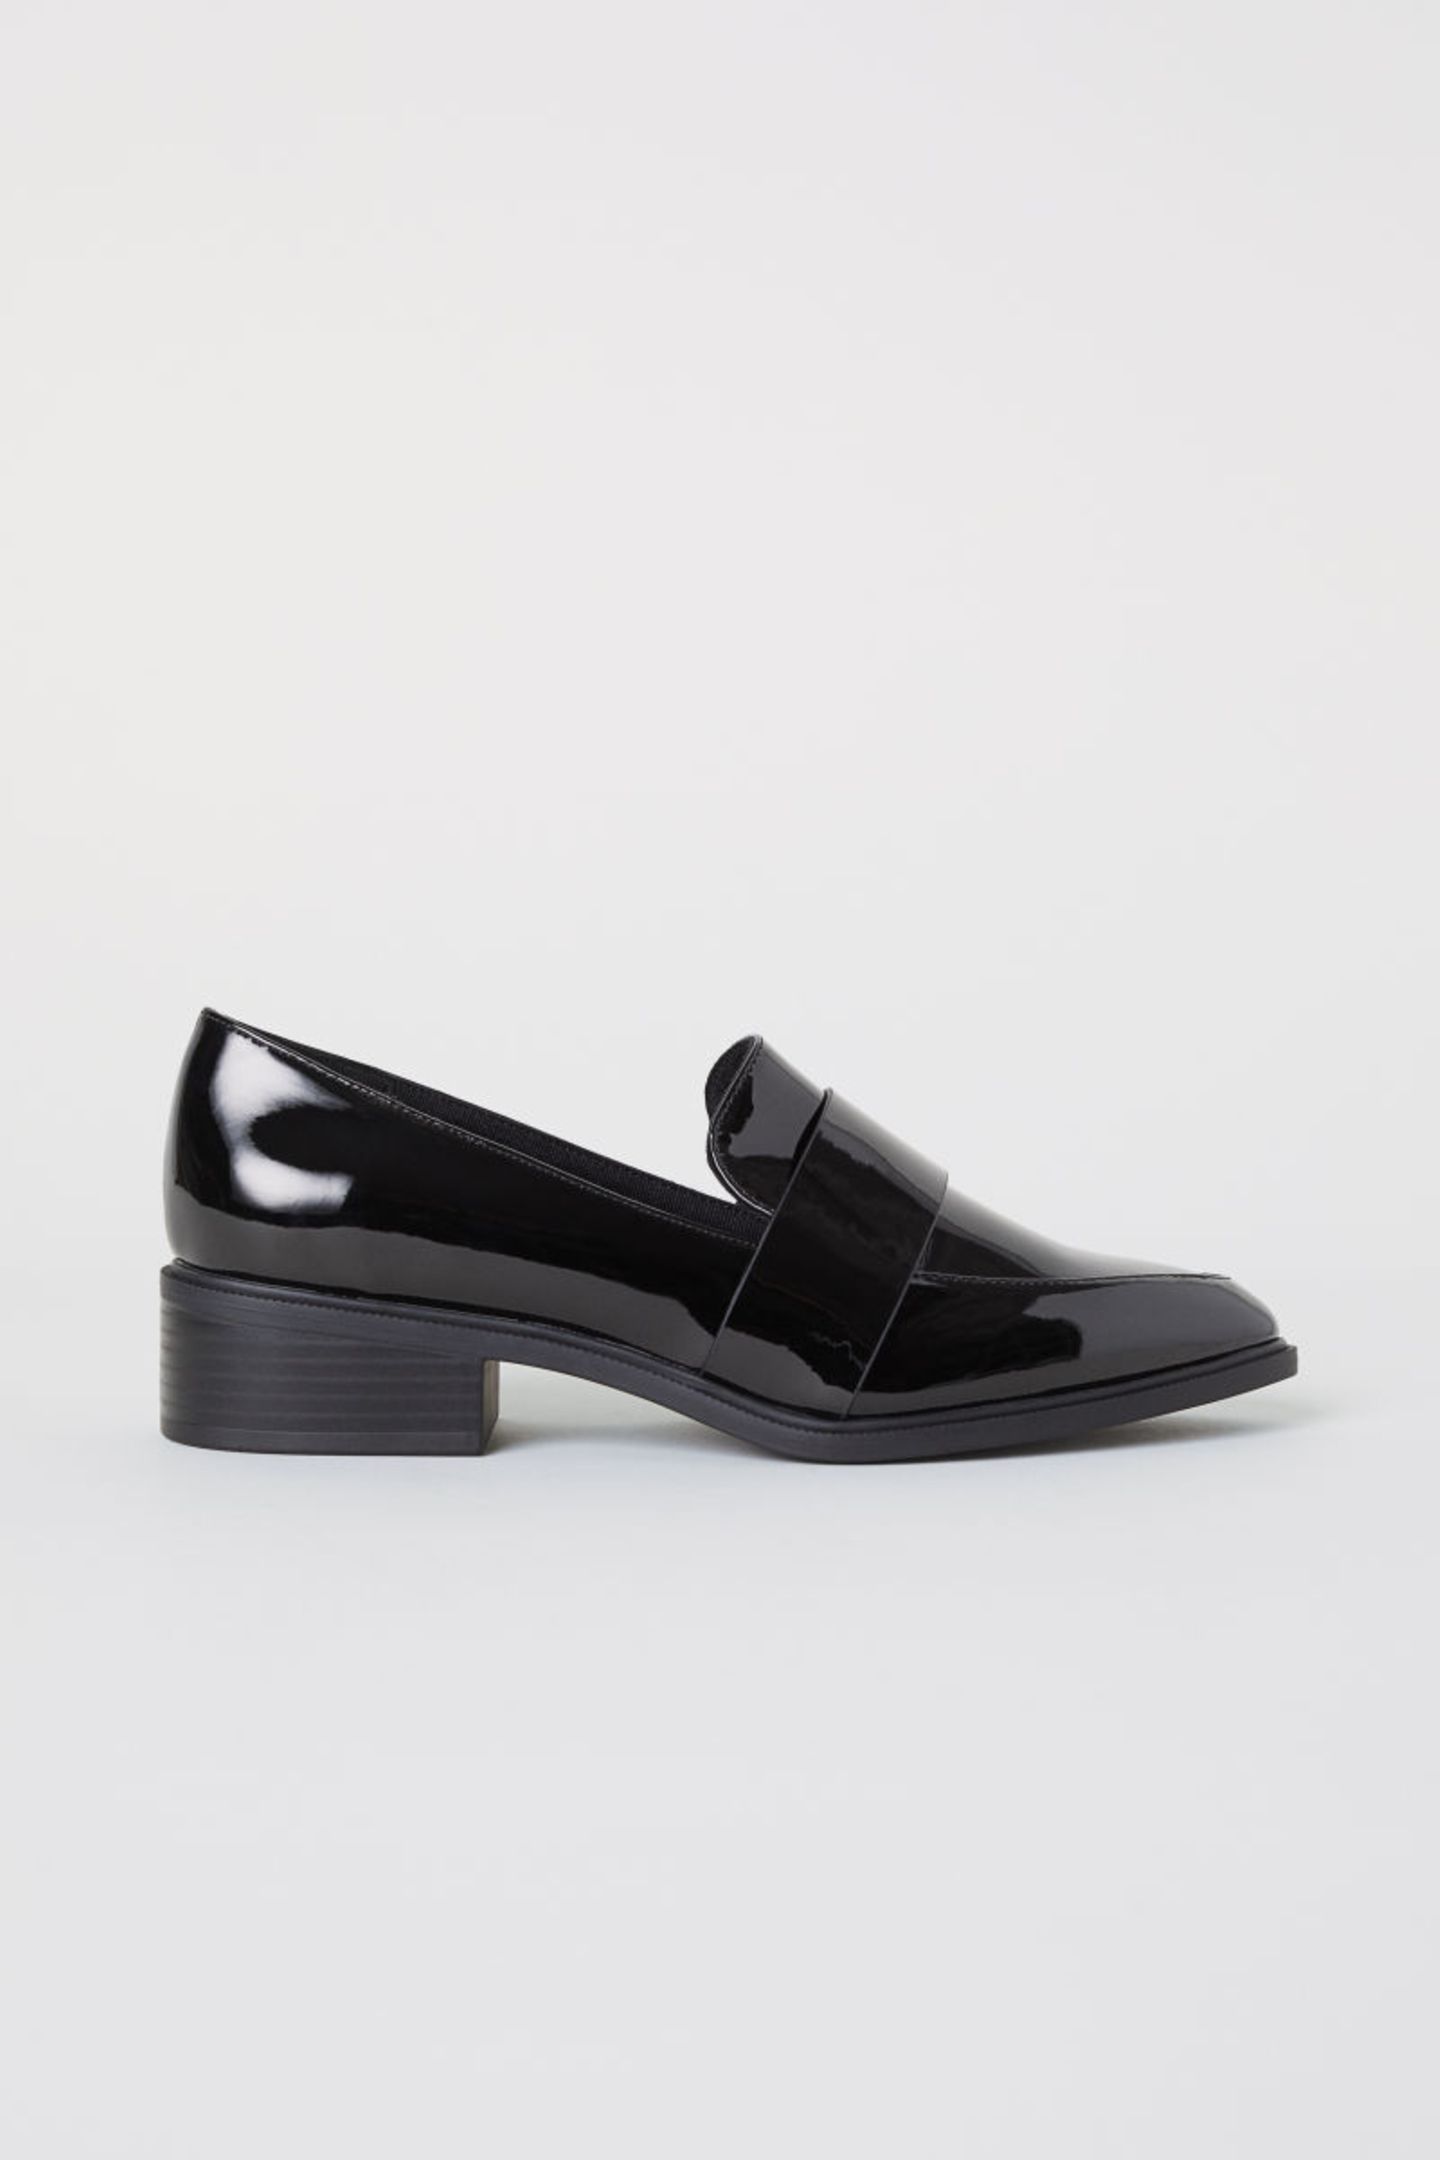 Festliche Schuhe ohne Absatz: Schwarze Lack-Loafer